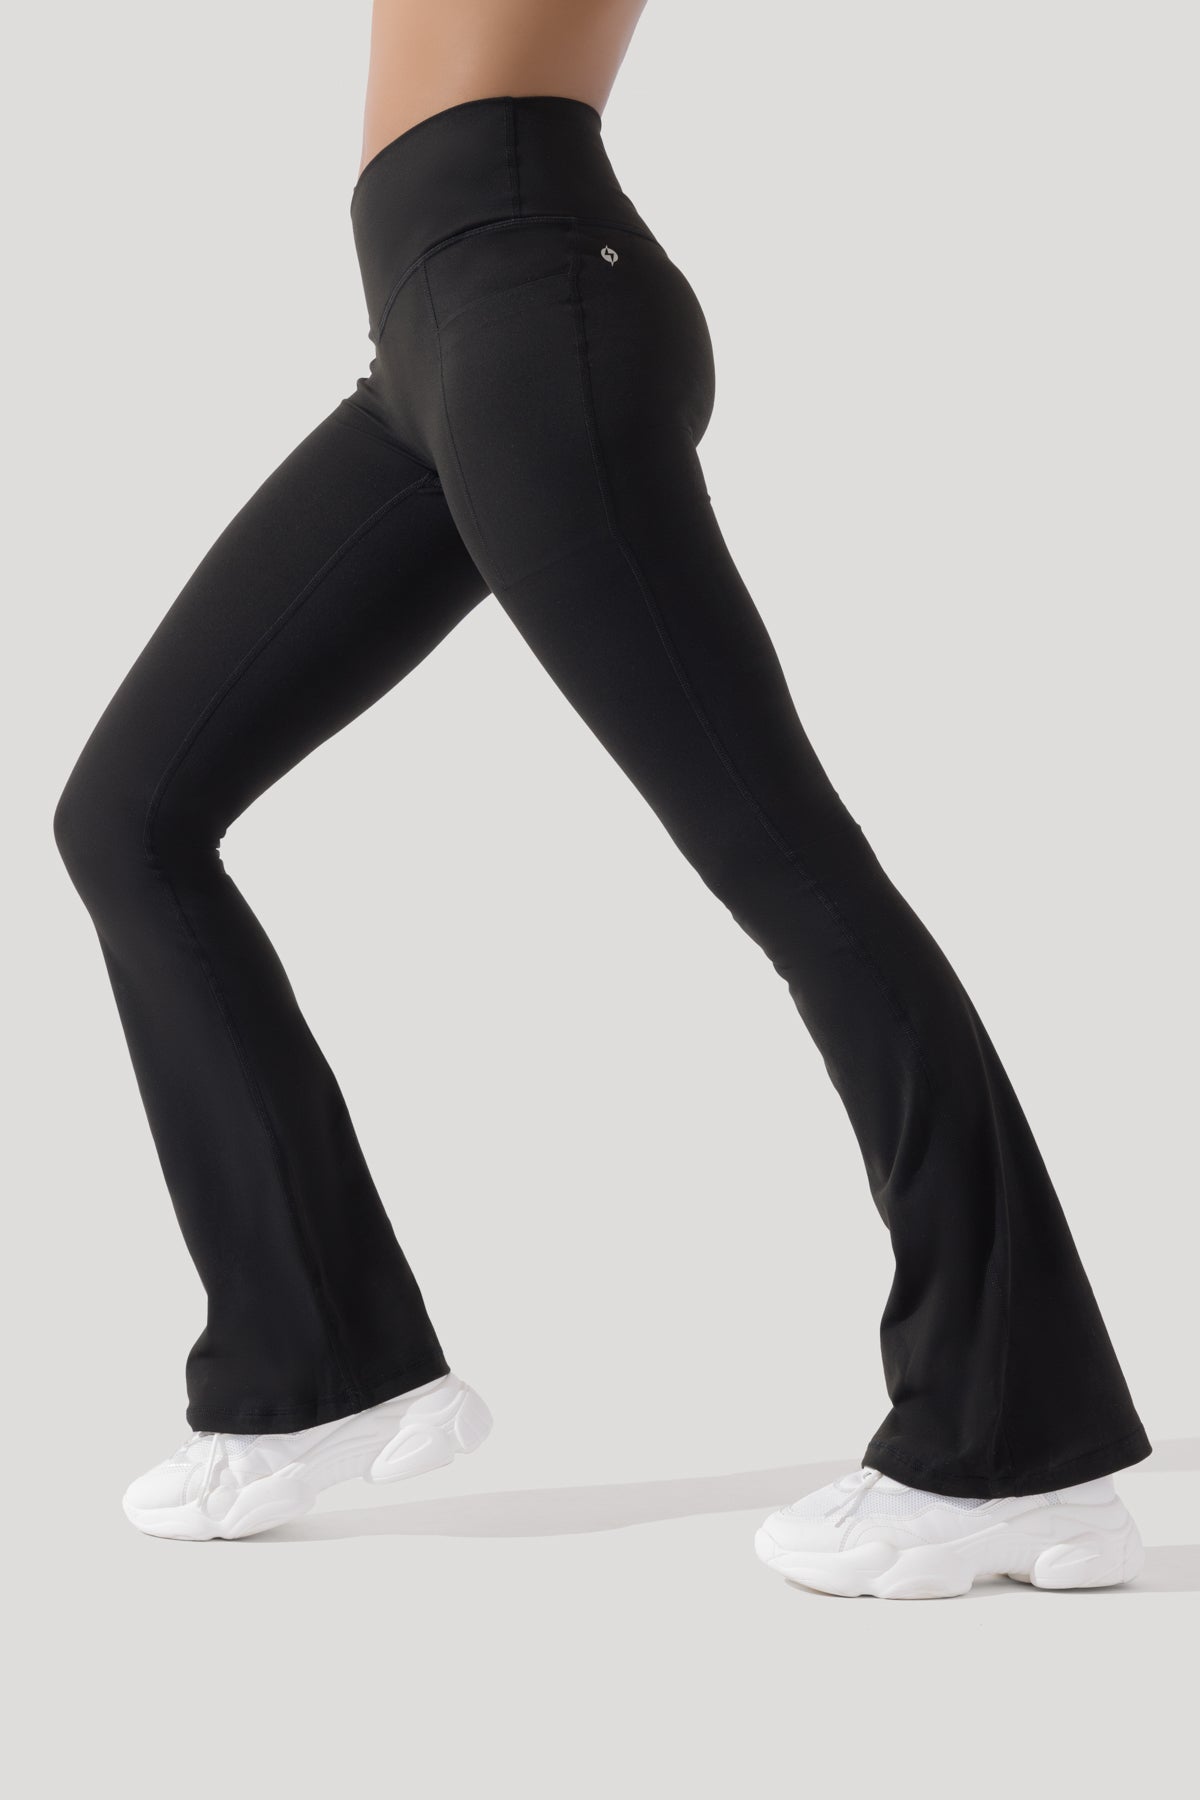 POPFLEX Active Believe 7/8 Leggings in Mint, Women's Fashion